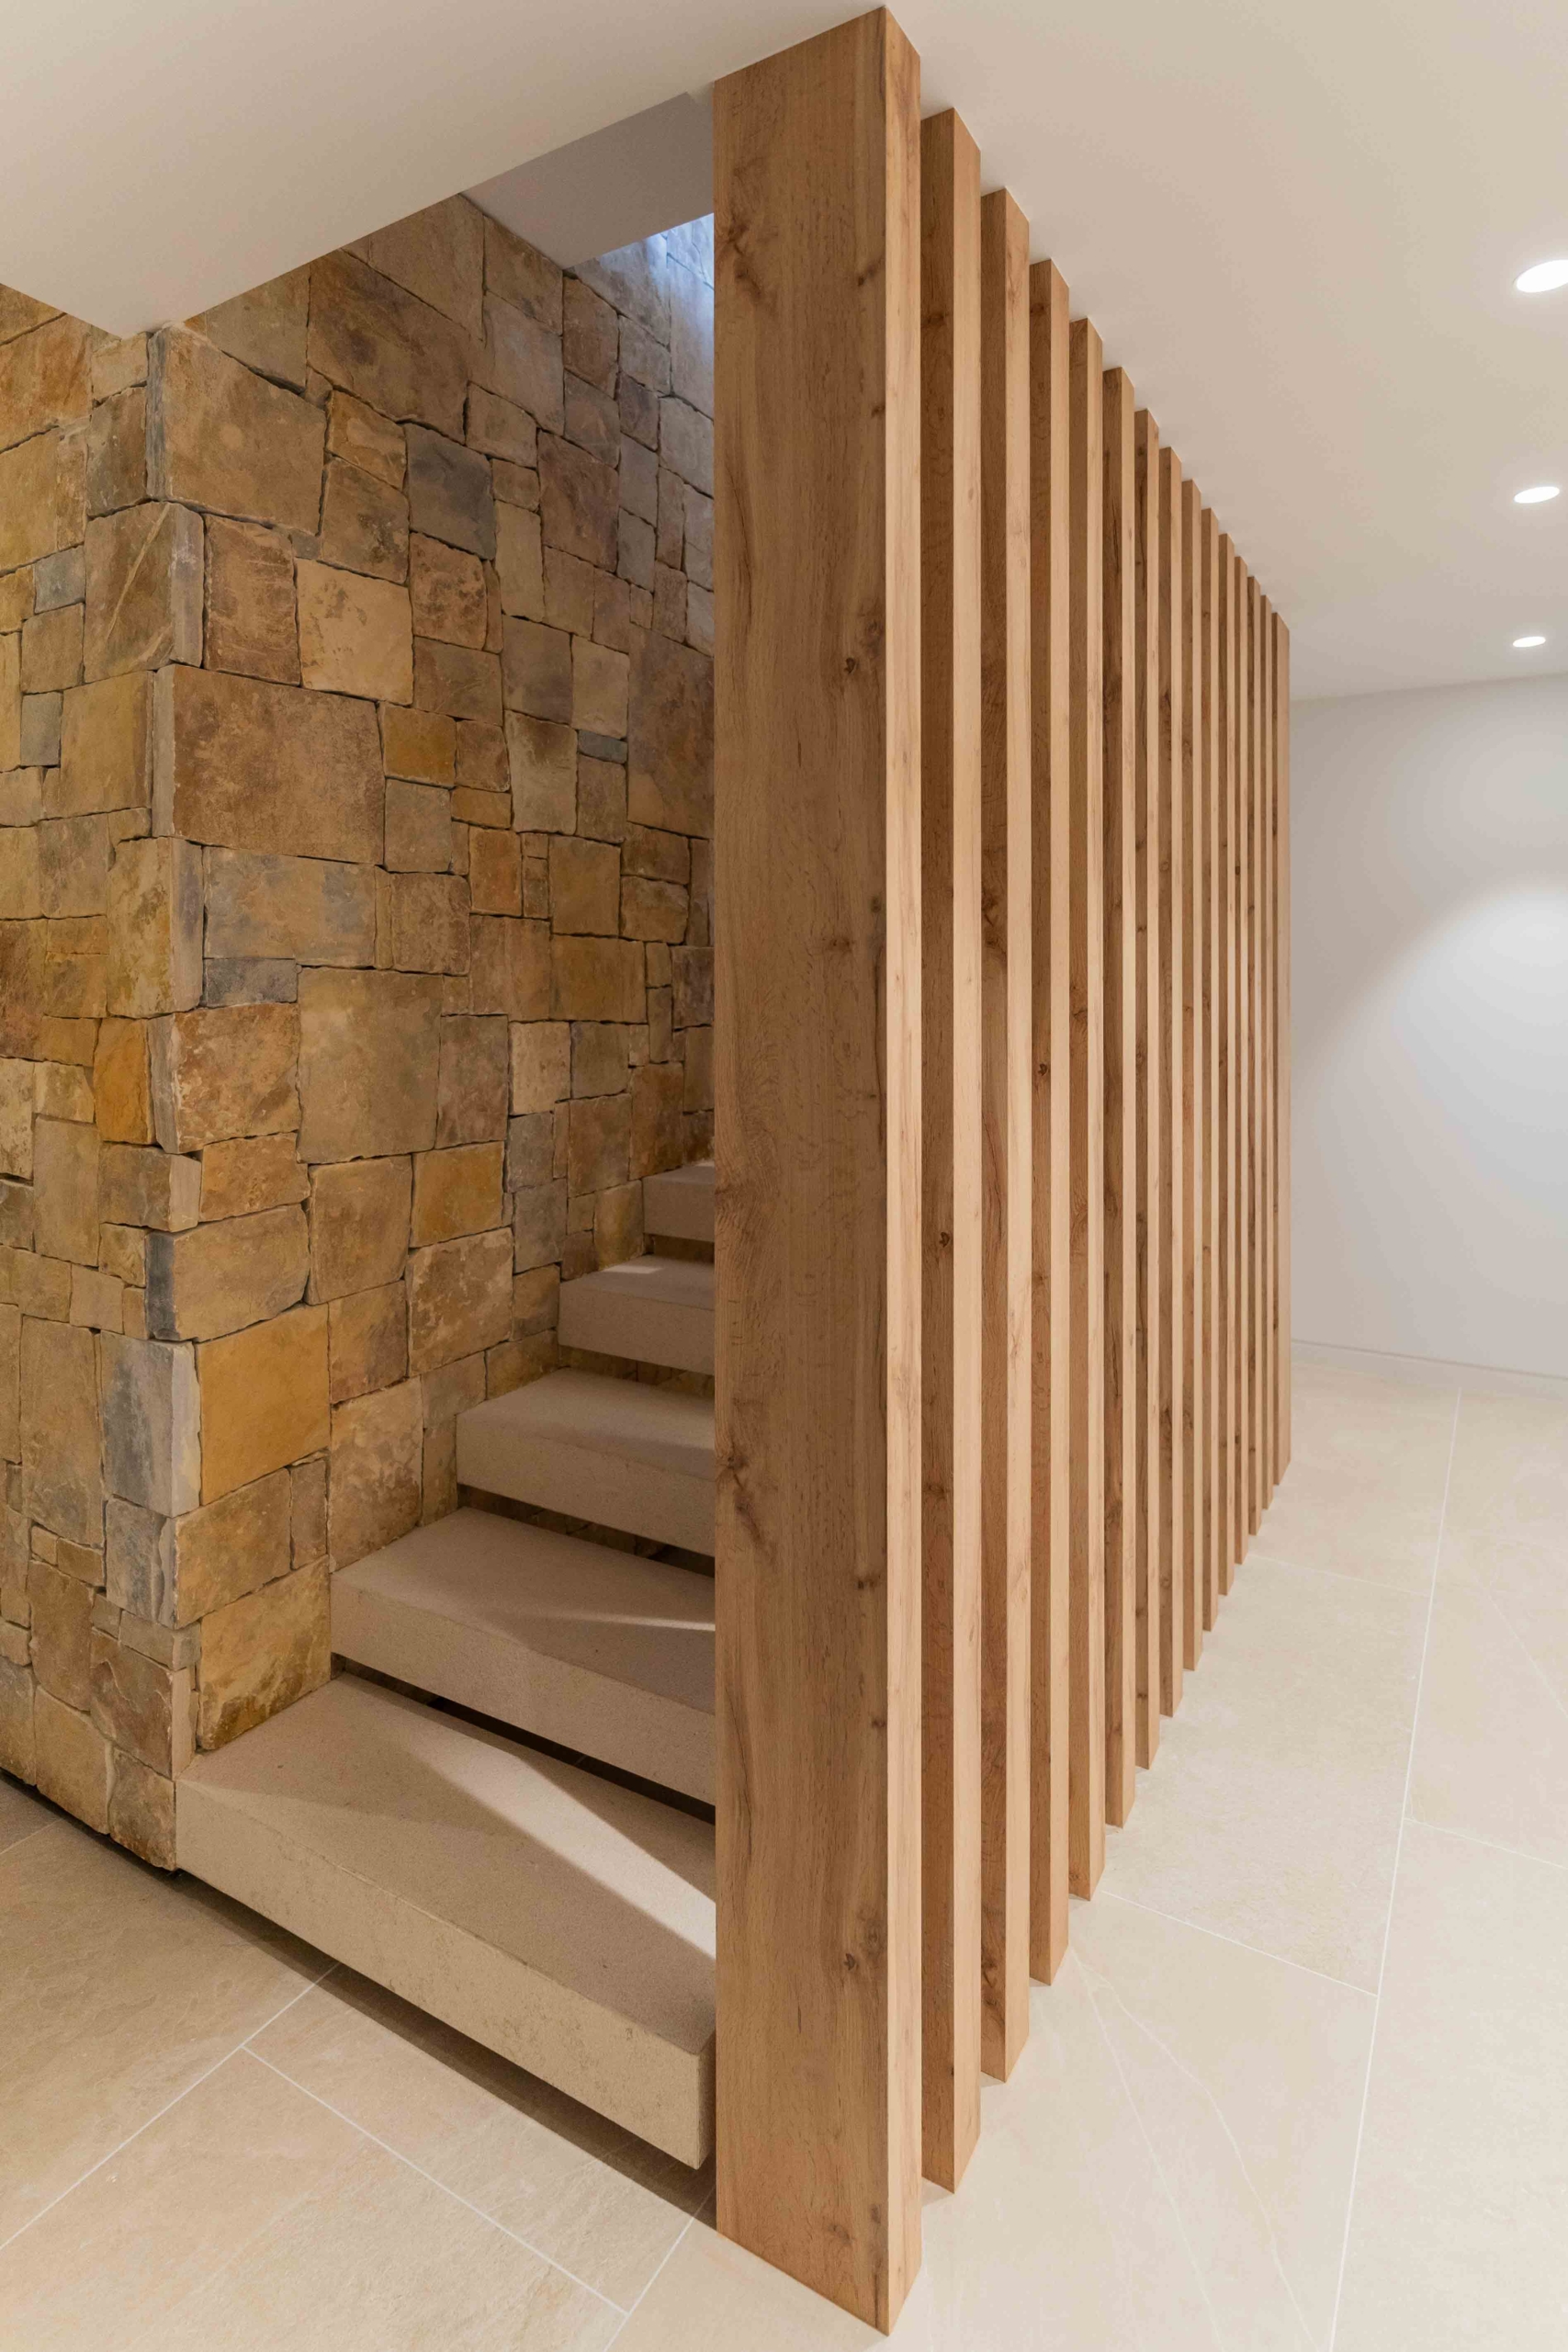 Escaleras interiores vivienda con muro de piedra natural y listones de madera tecnológica